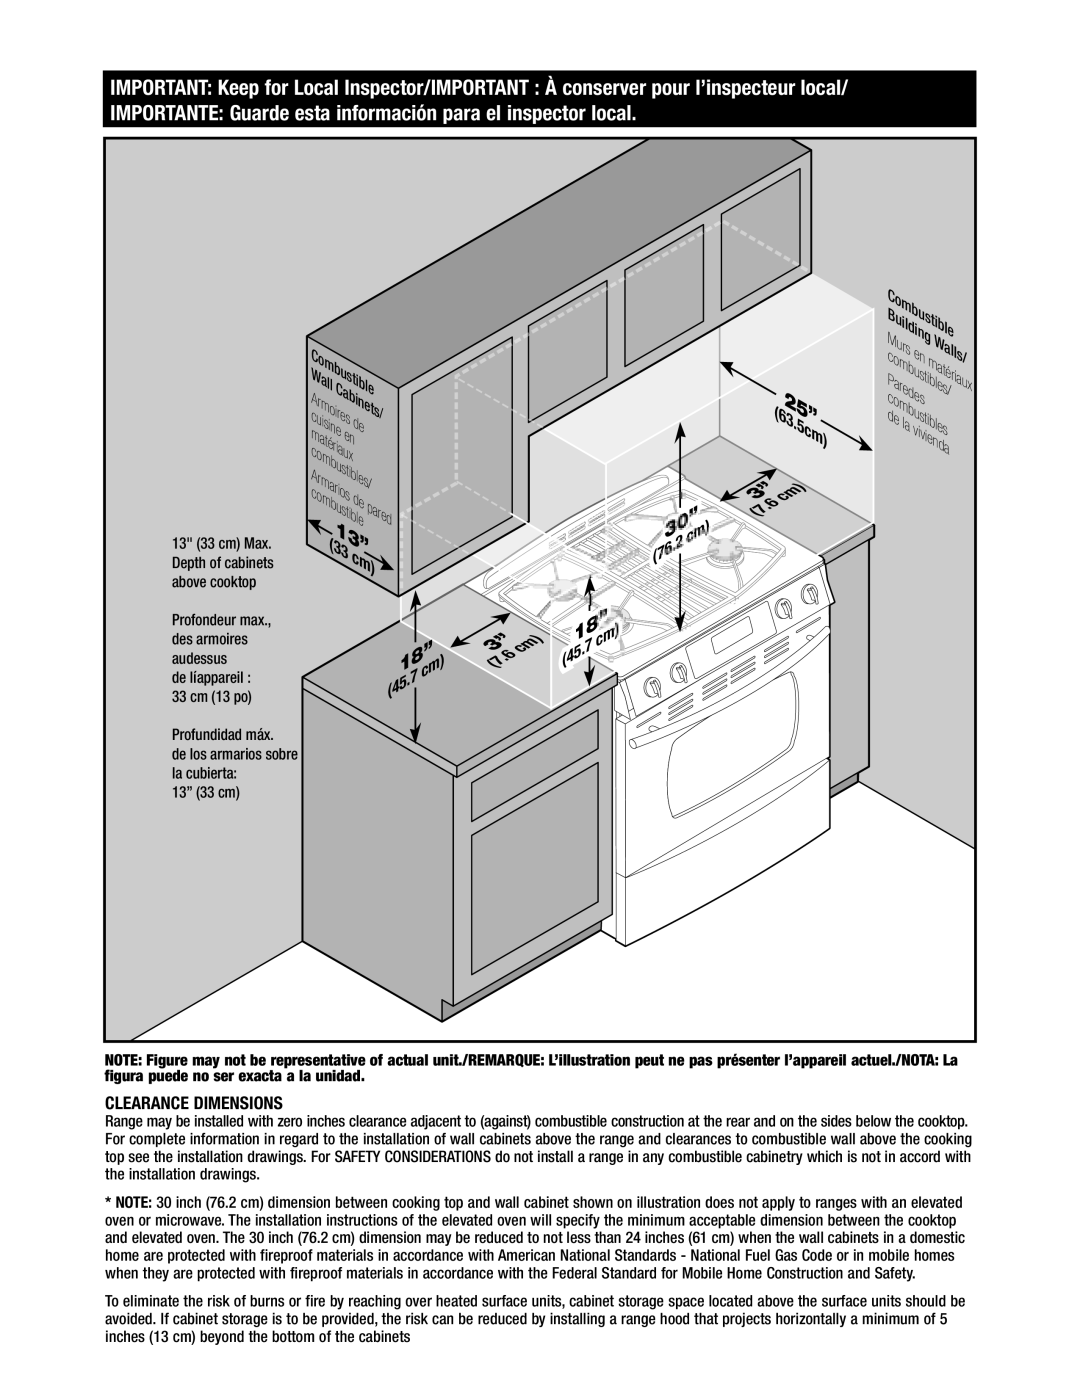 Jenn-Air Oven manual 625”, IMPORTANTE Guarde esta información para el inspector local, Clearance Dimensions, 18”3, ui bus 